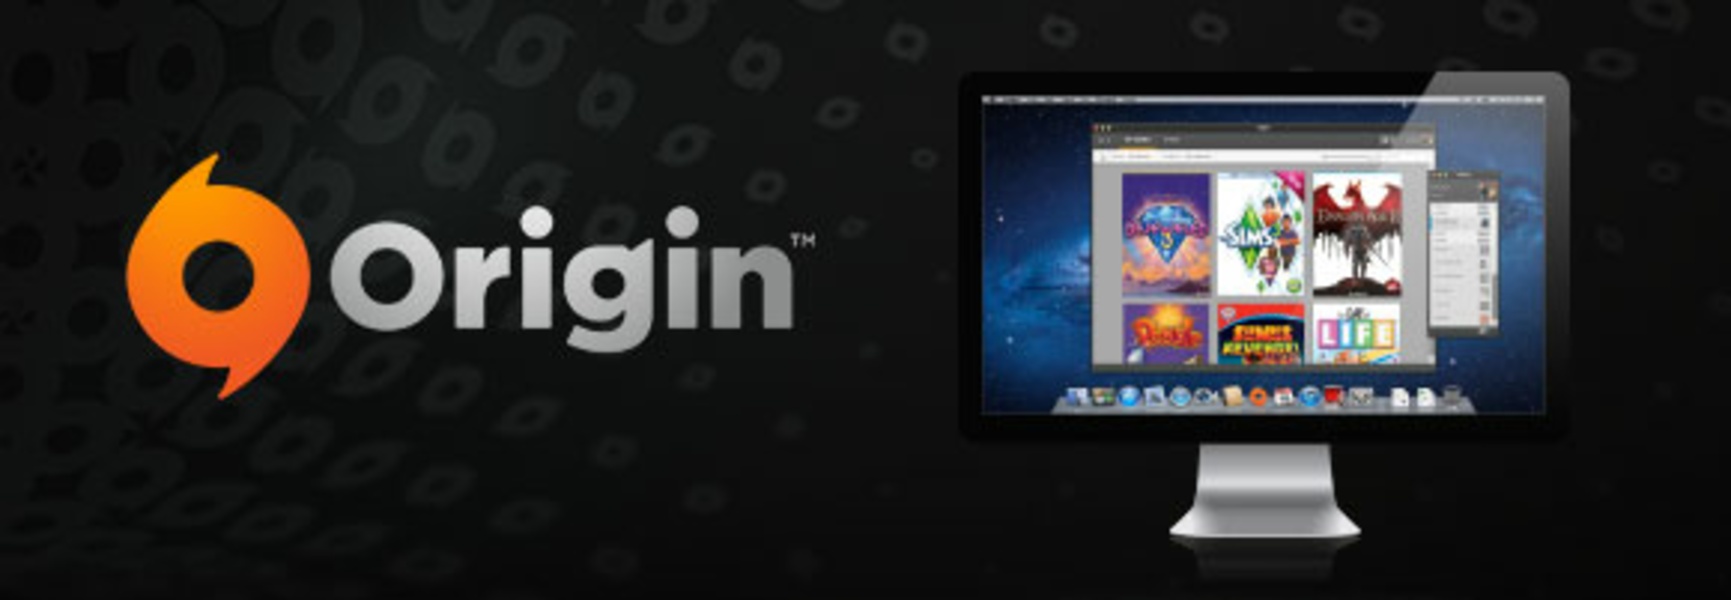 Dragon Age Origin for Mac 